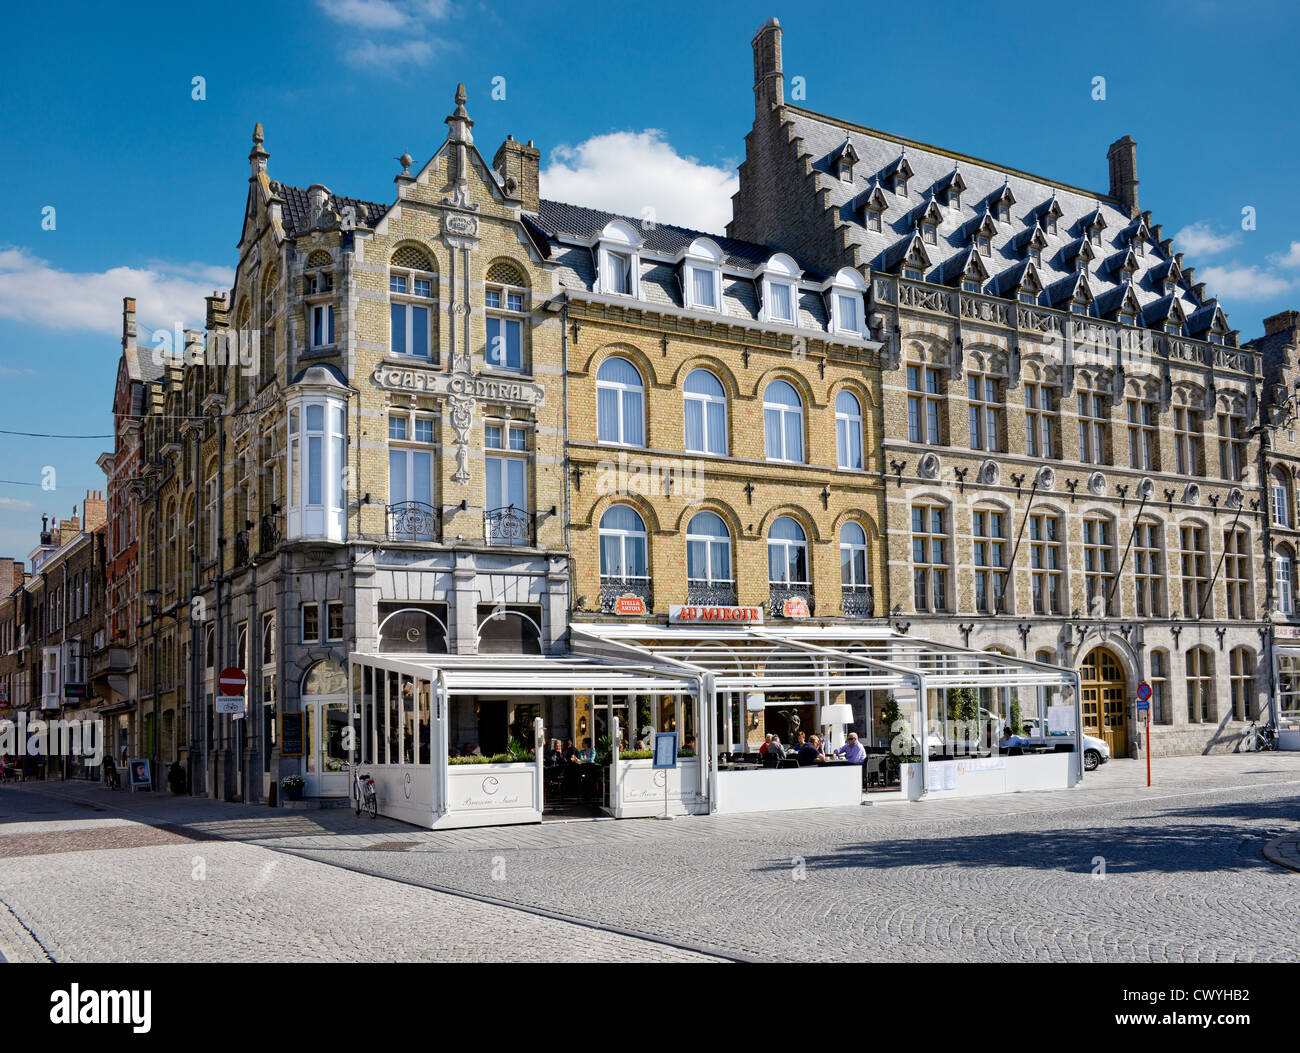 Eine Ansicht von Gebäuden in der Stadt Platz, Ypern, Flandern, Belgien Stockfoto